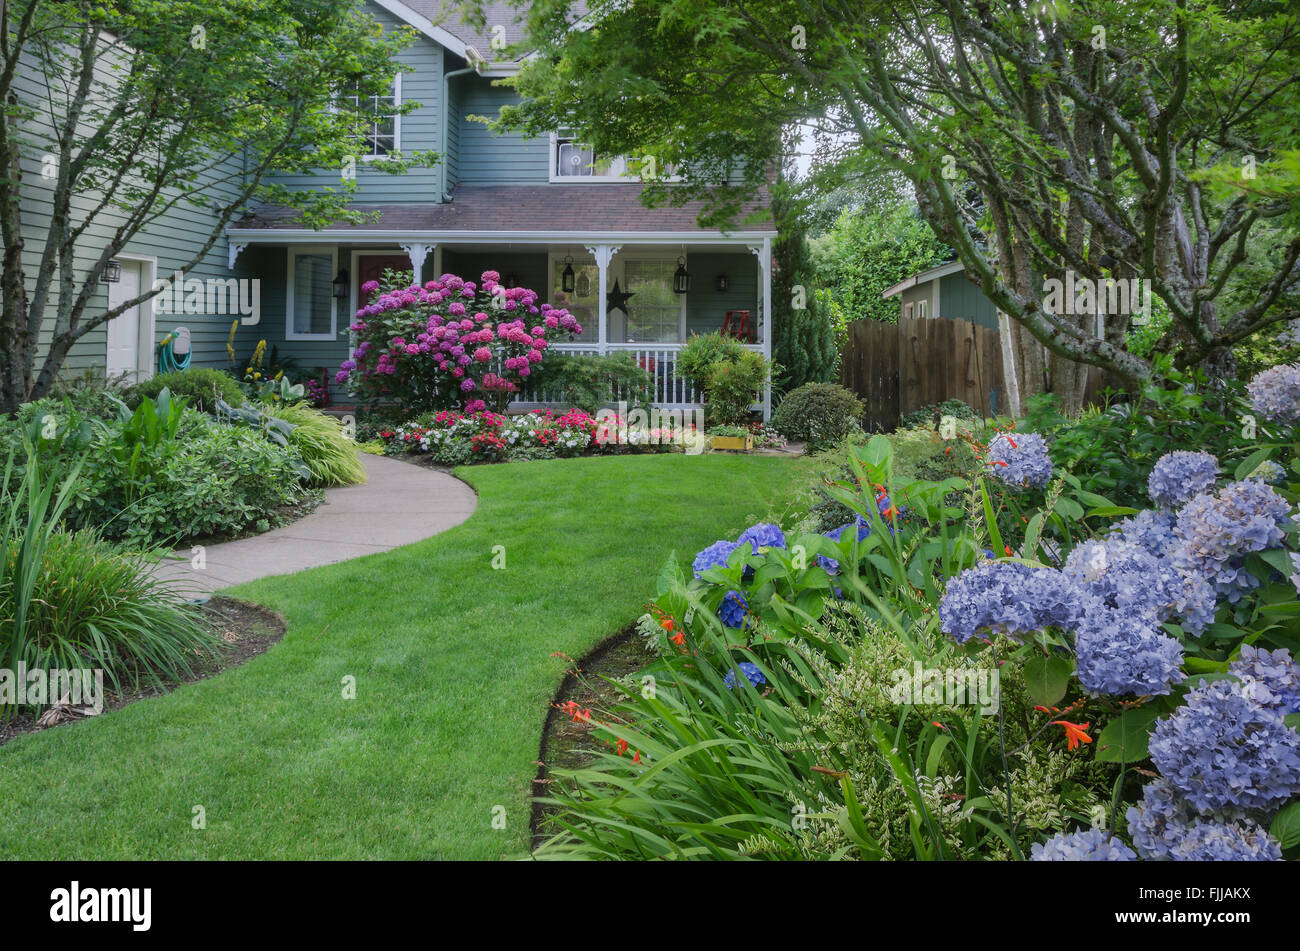 Ingresso di una casa attraverso un bellissimo giardino, evidenziato da rose e ortensie blu. Foto Stock